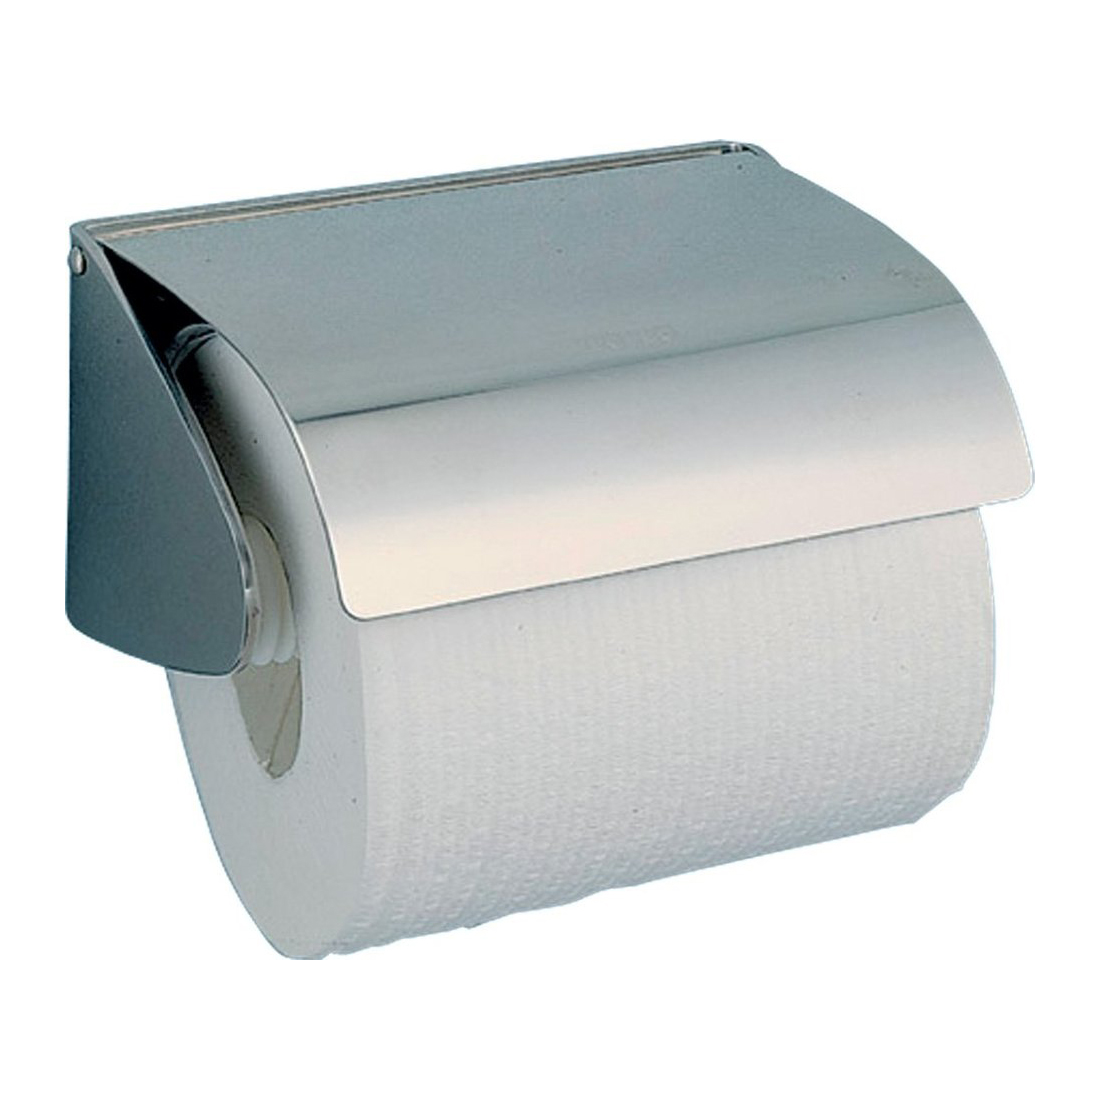 Держатель для туалетной бумаги Nofer Classic 05013.B держатель для туалетной бумаги nofer niza 16859 s